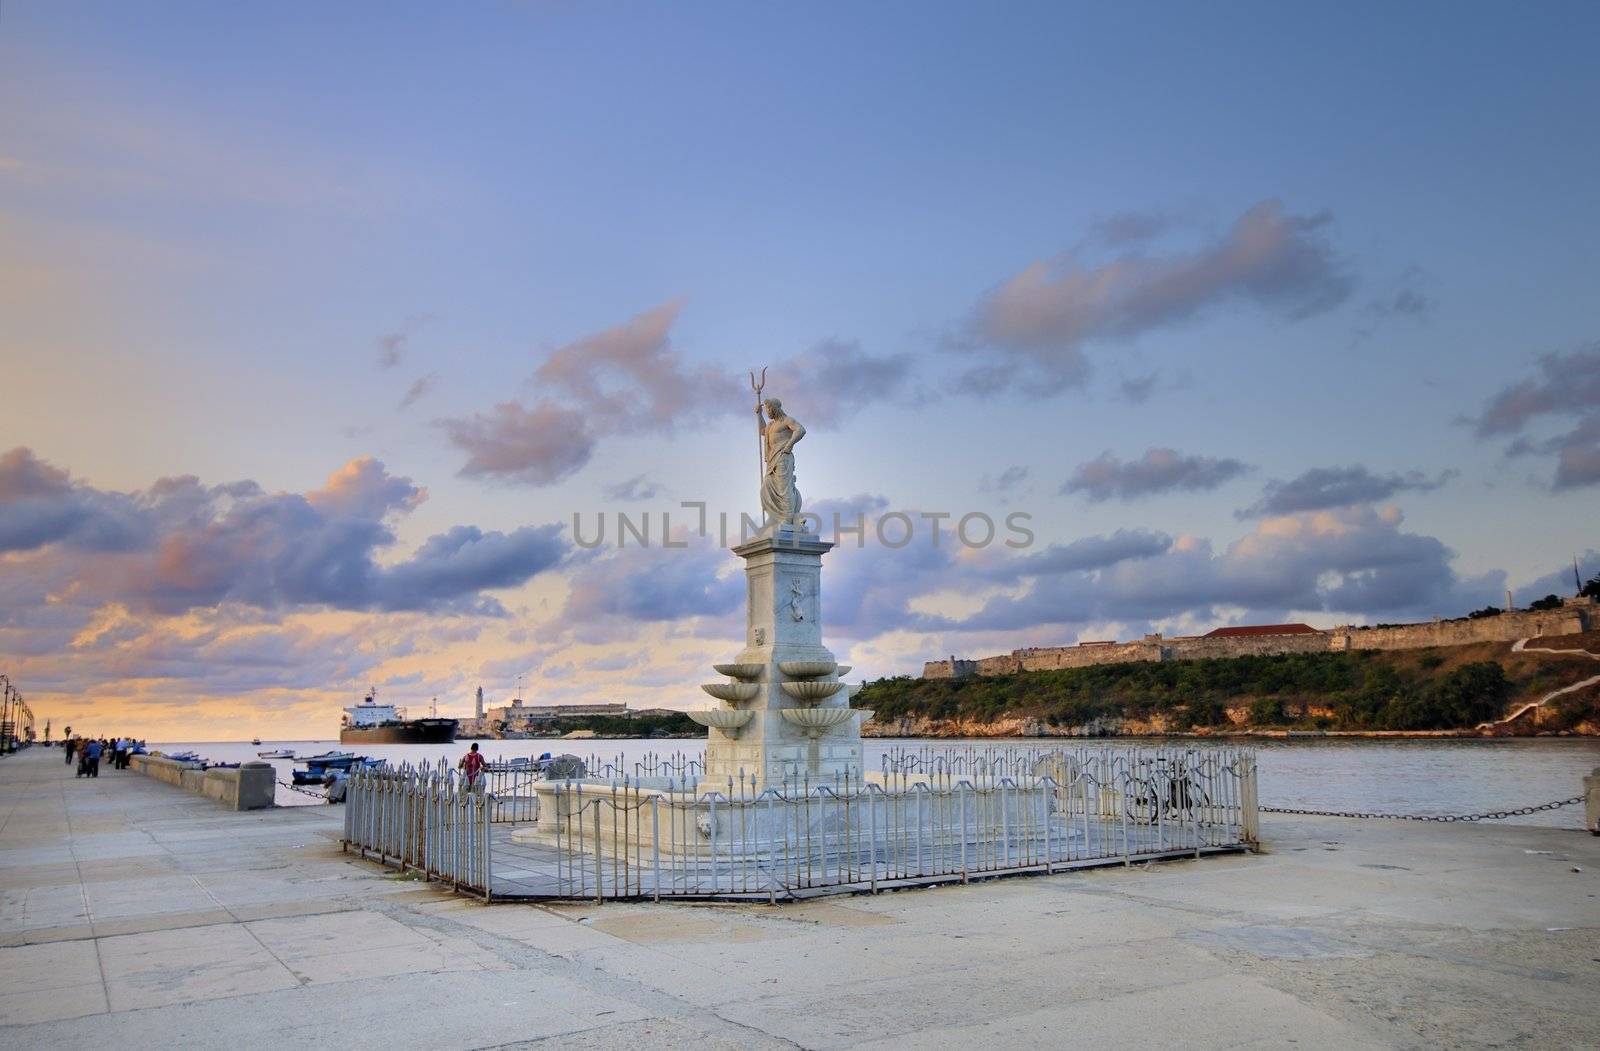 Neptune statue in havana bay entrance against sunset sky